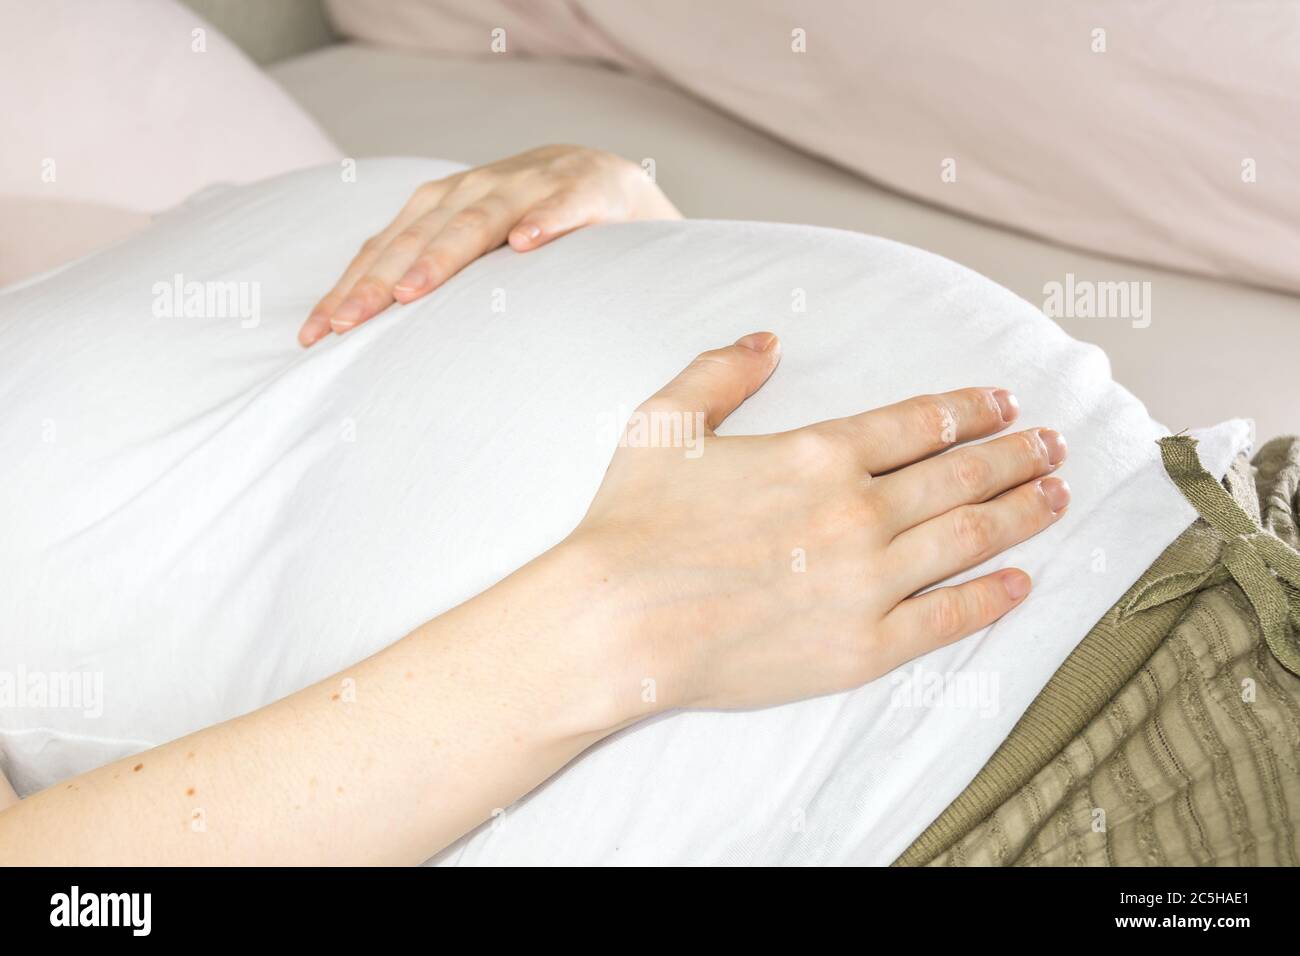 Nahaufnahme des Bauches der schwangeren Frau, während sie auf dem Bett liegt Stockfoto